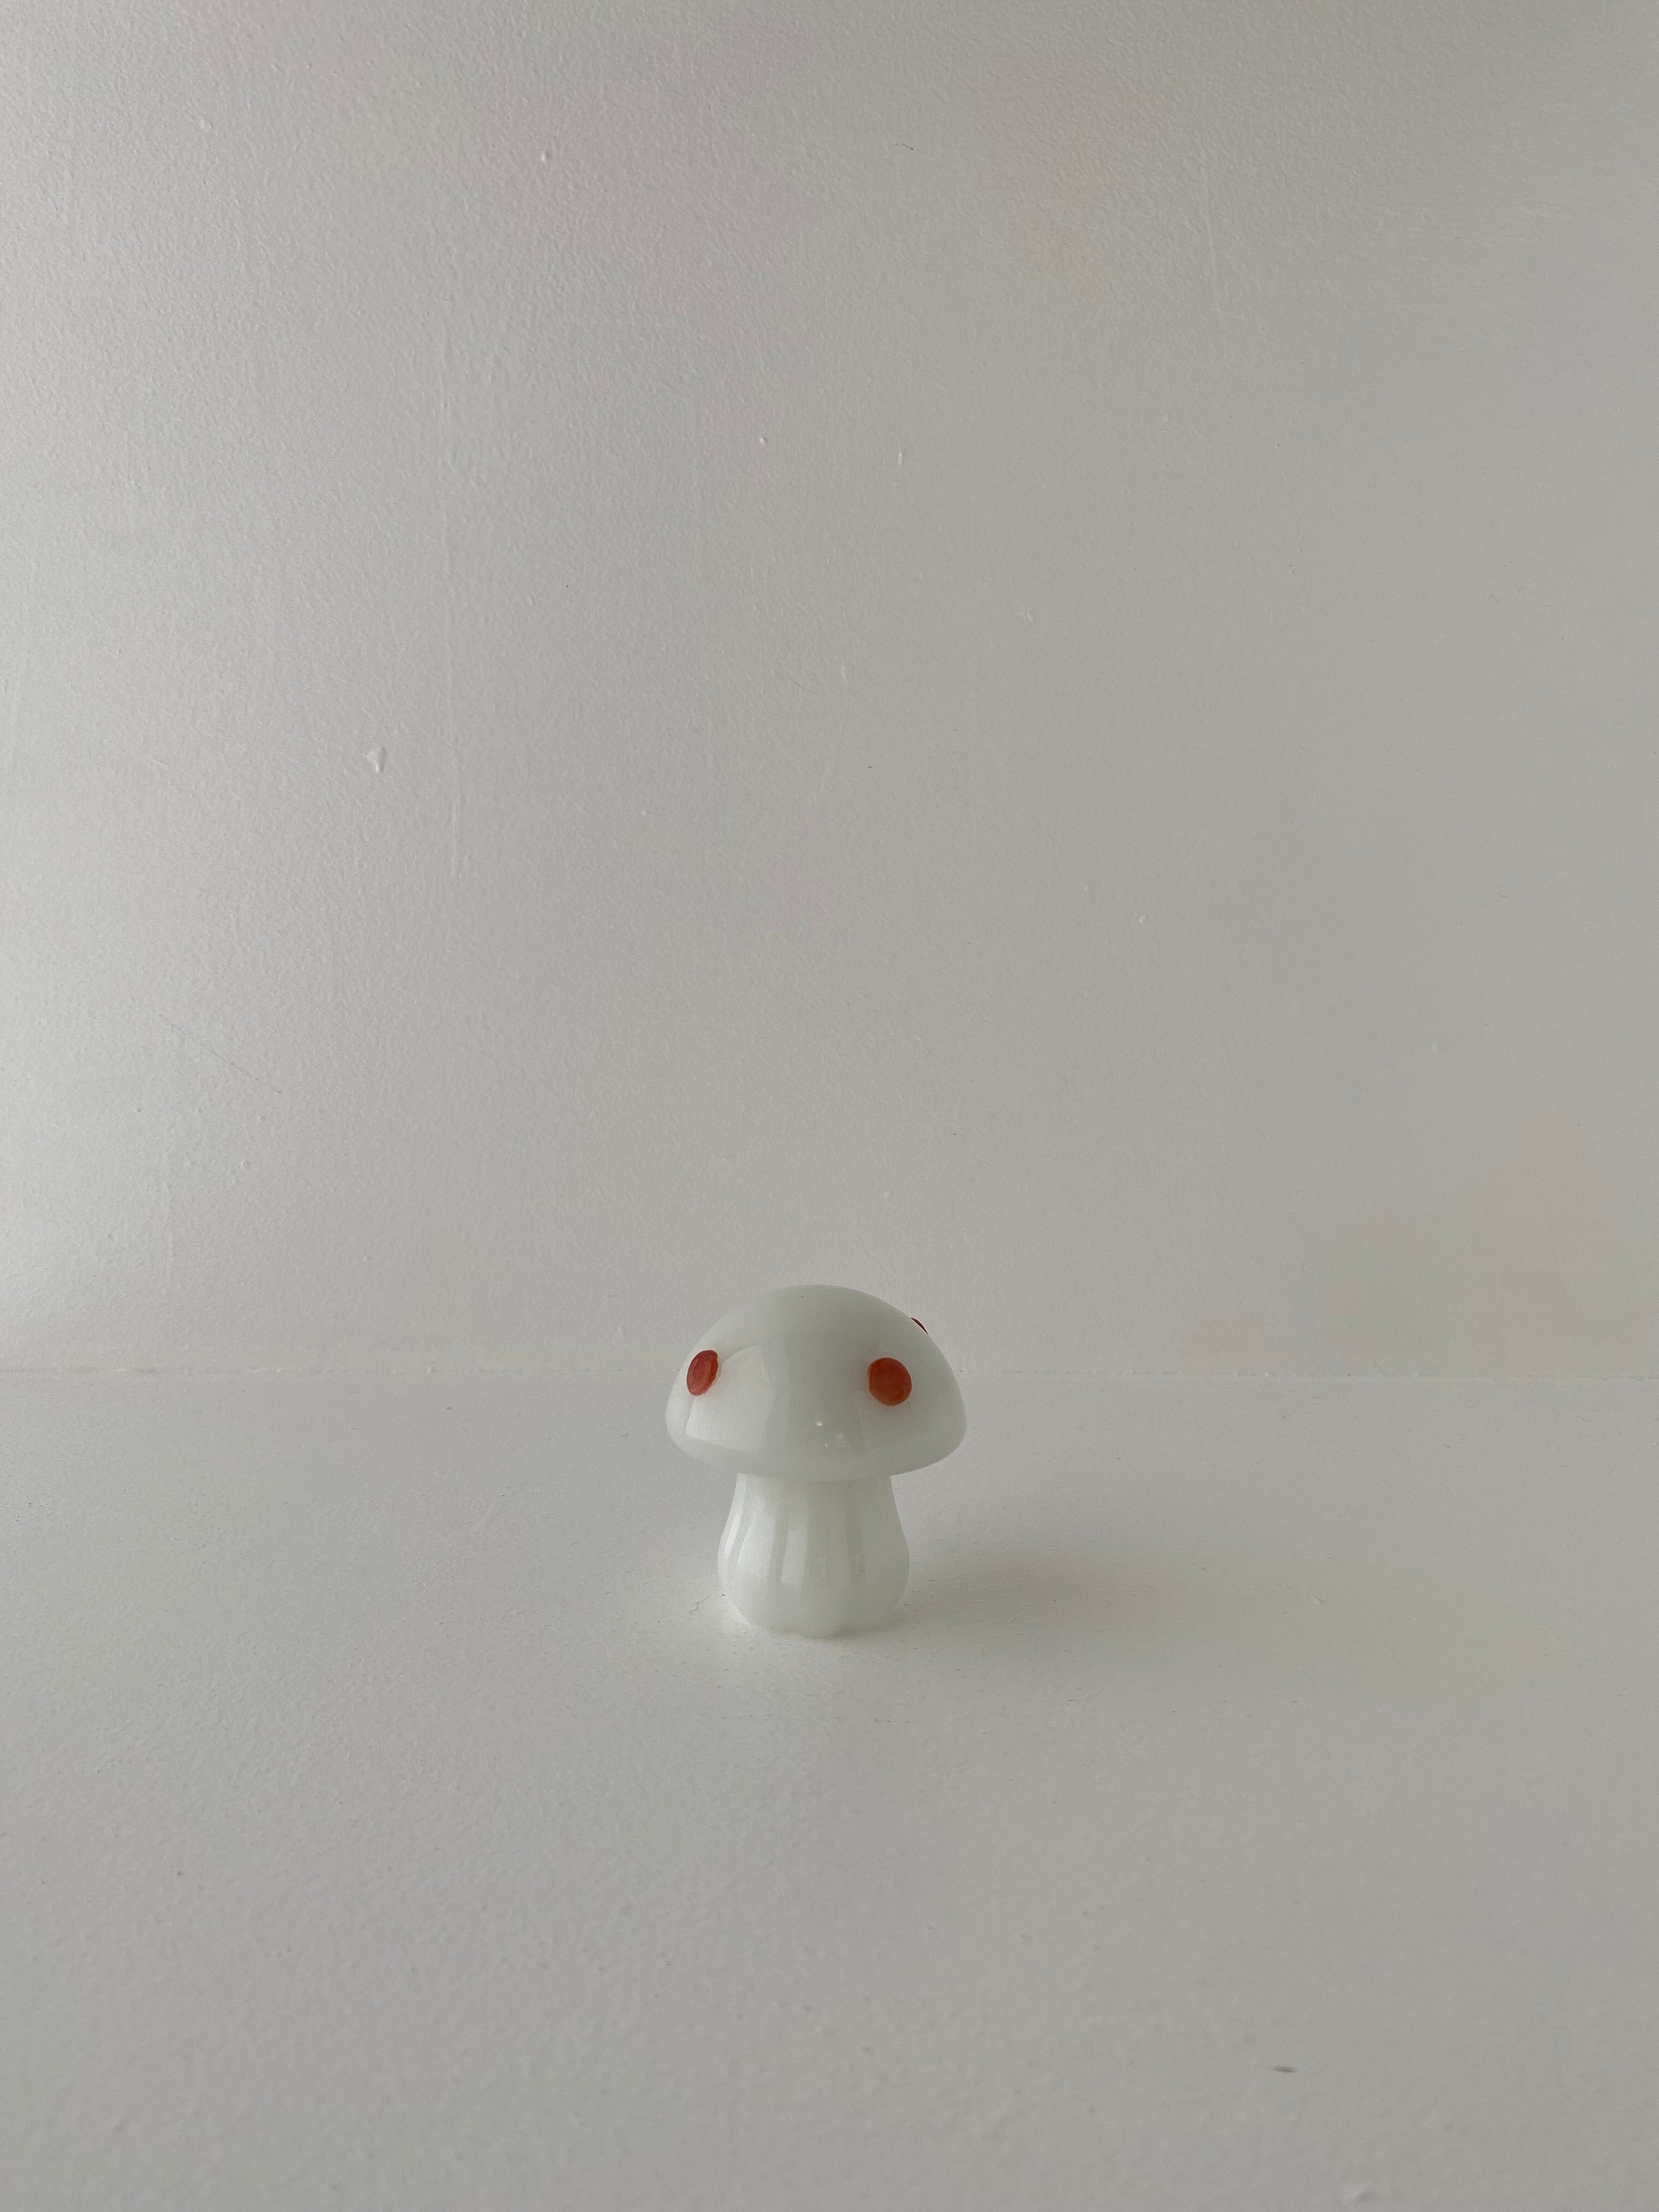 ALICE placeholder white mushroom&red dot